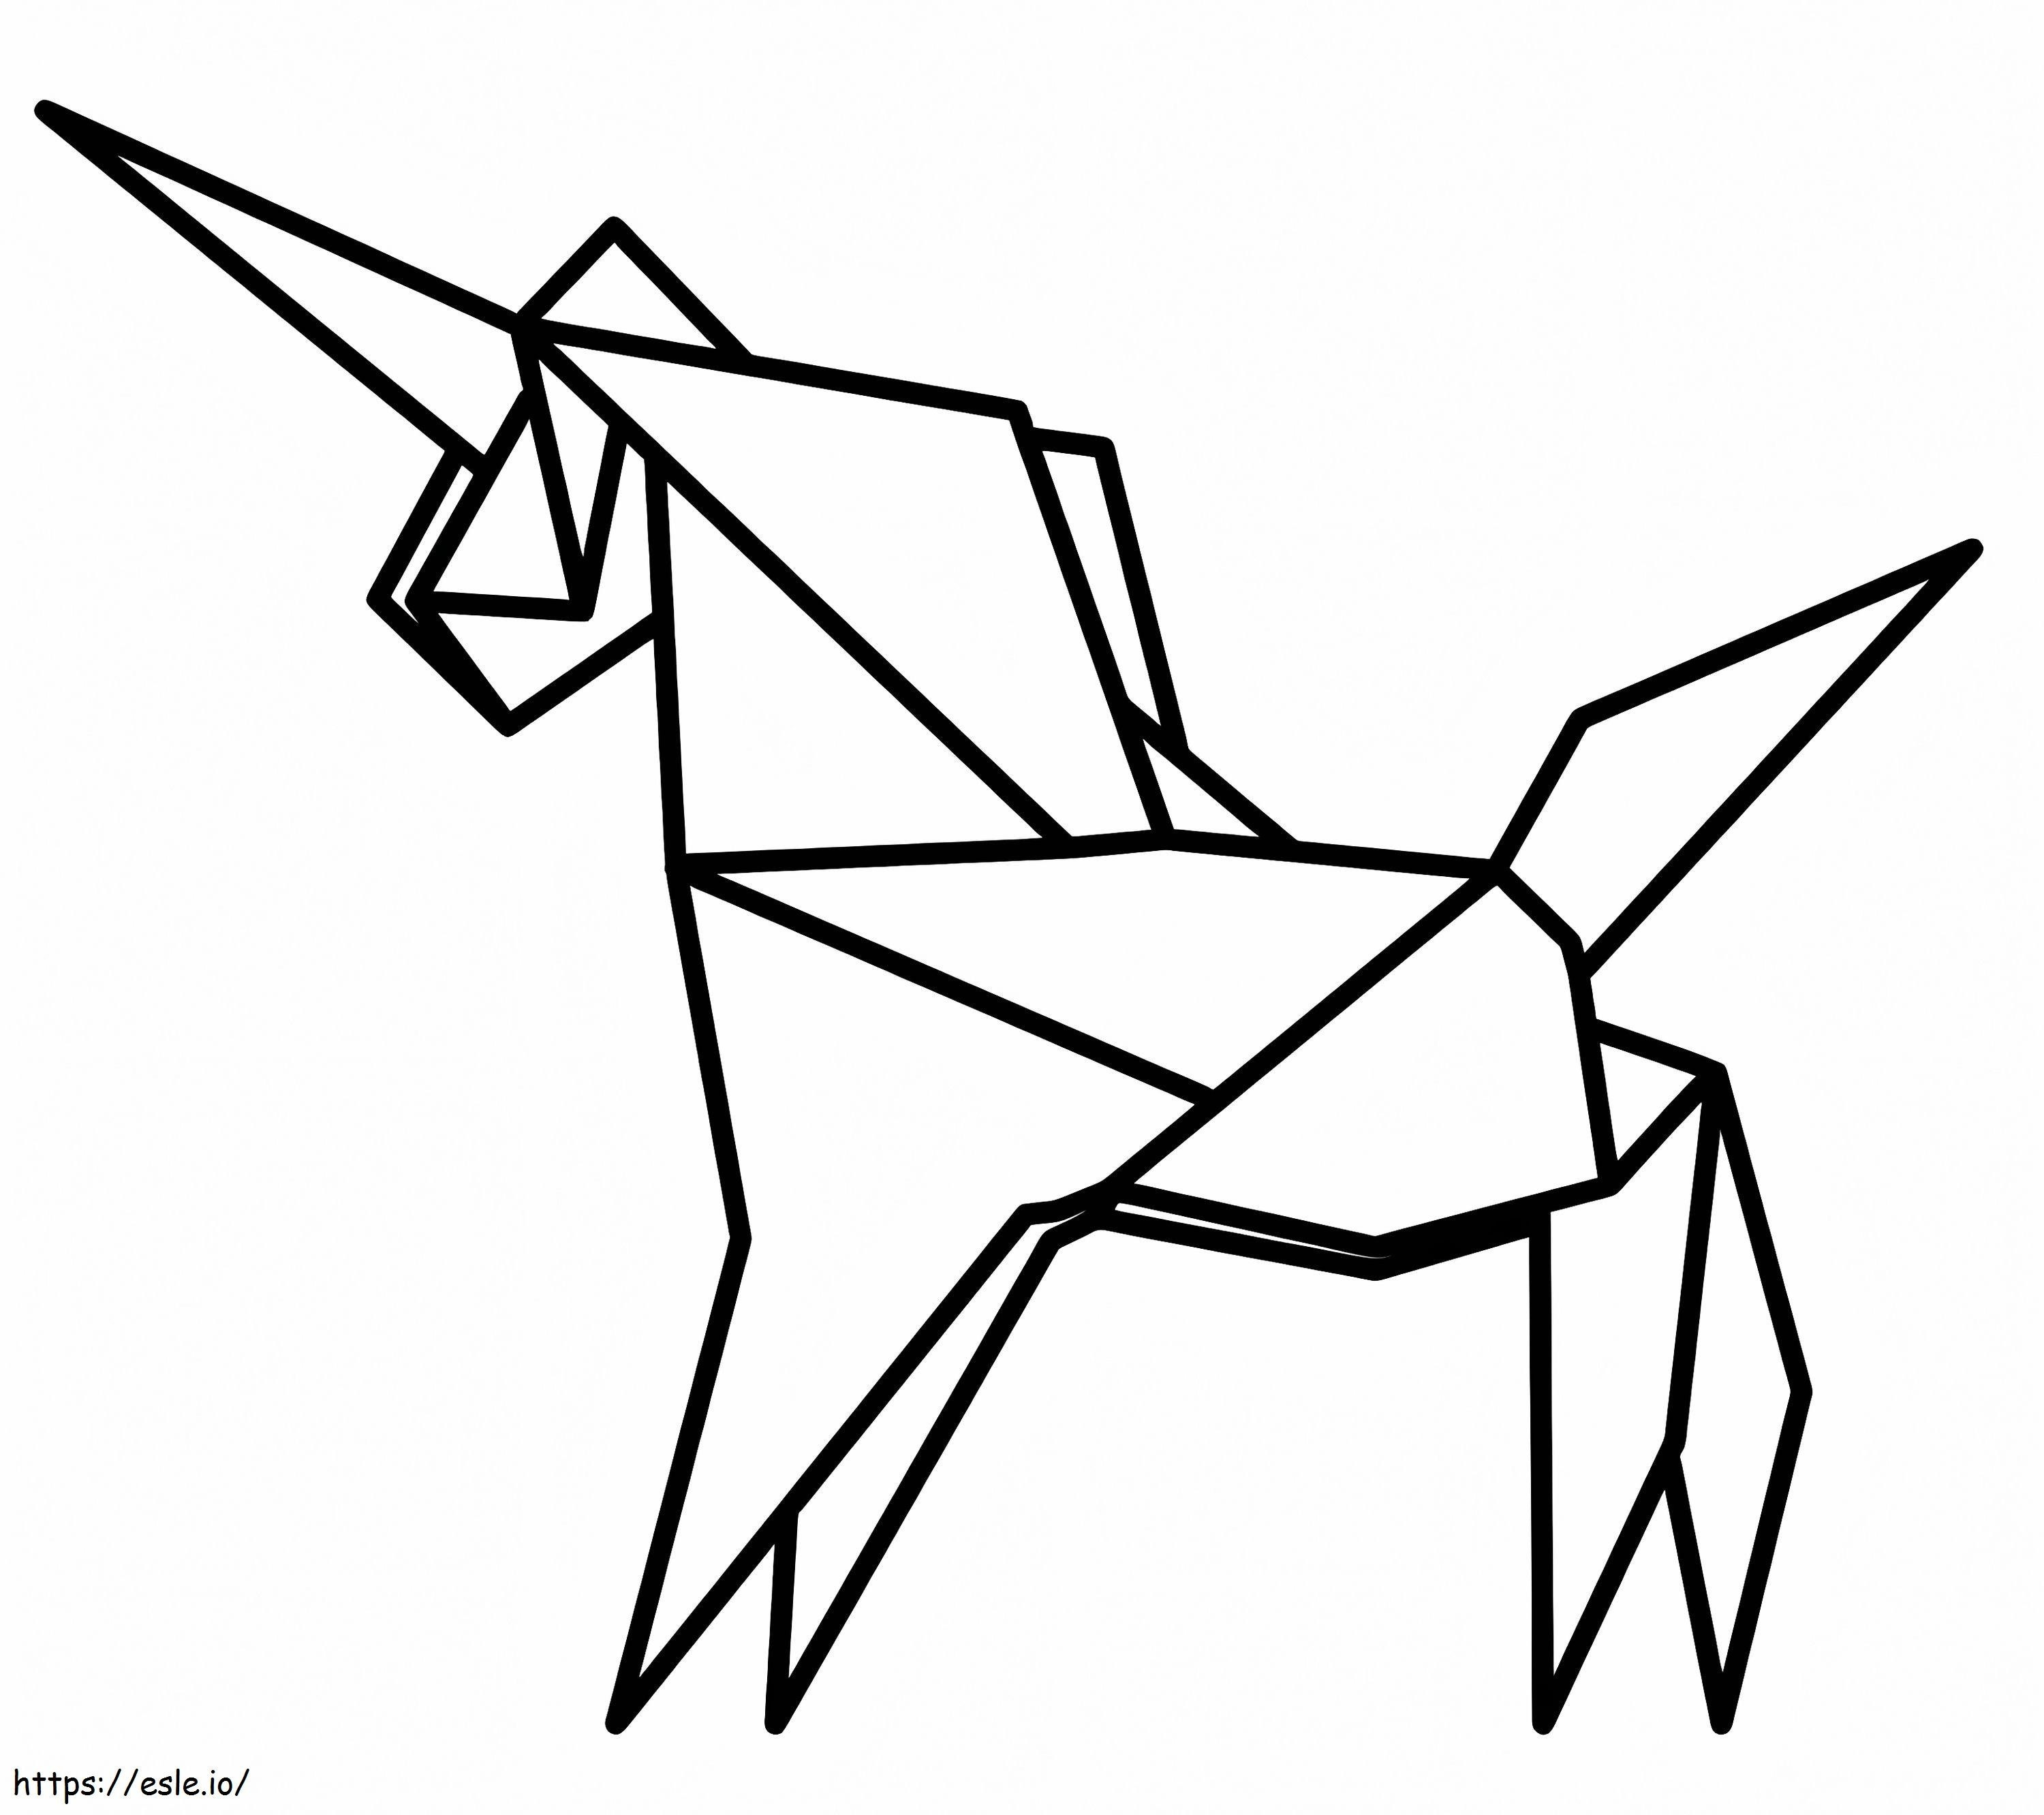 Unicorn origami imprimabil de colorat